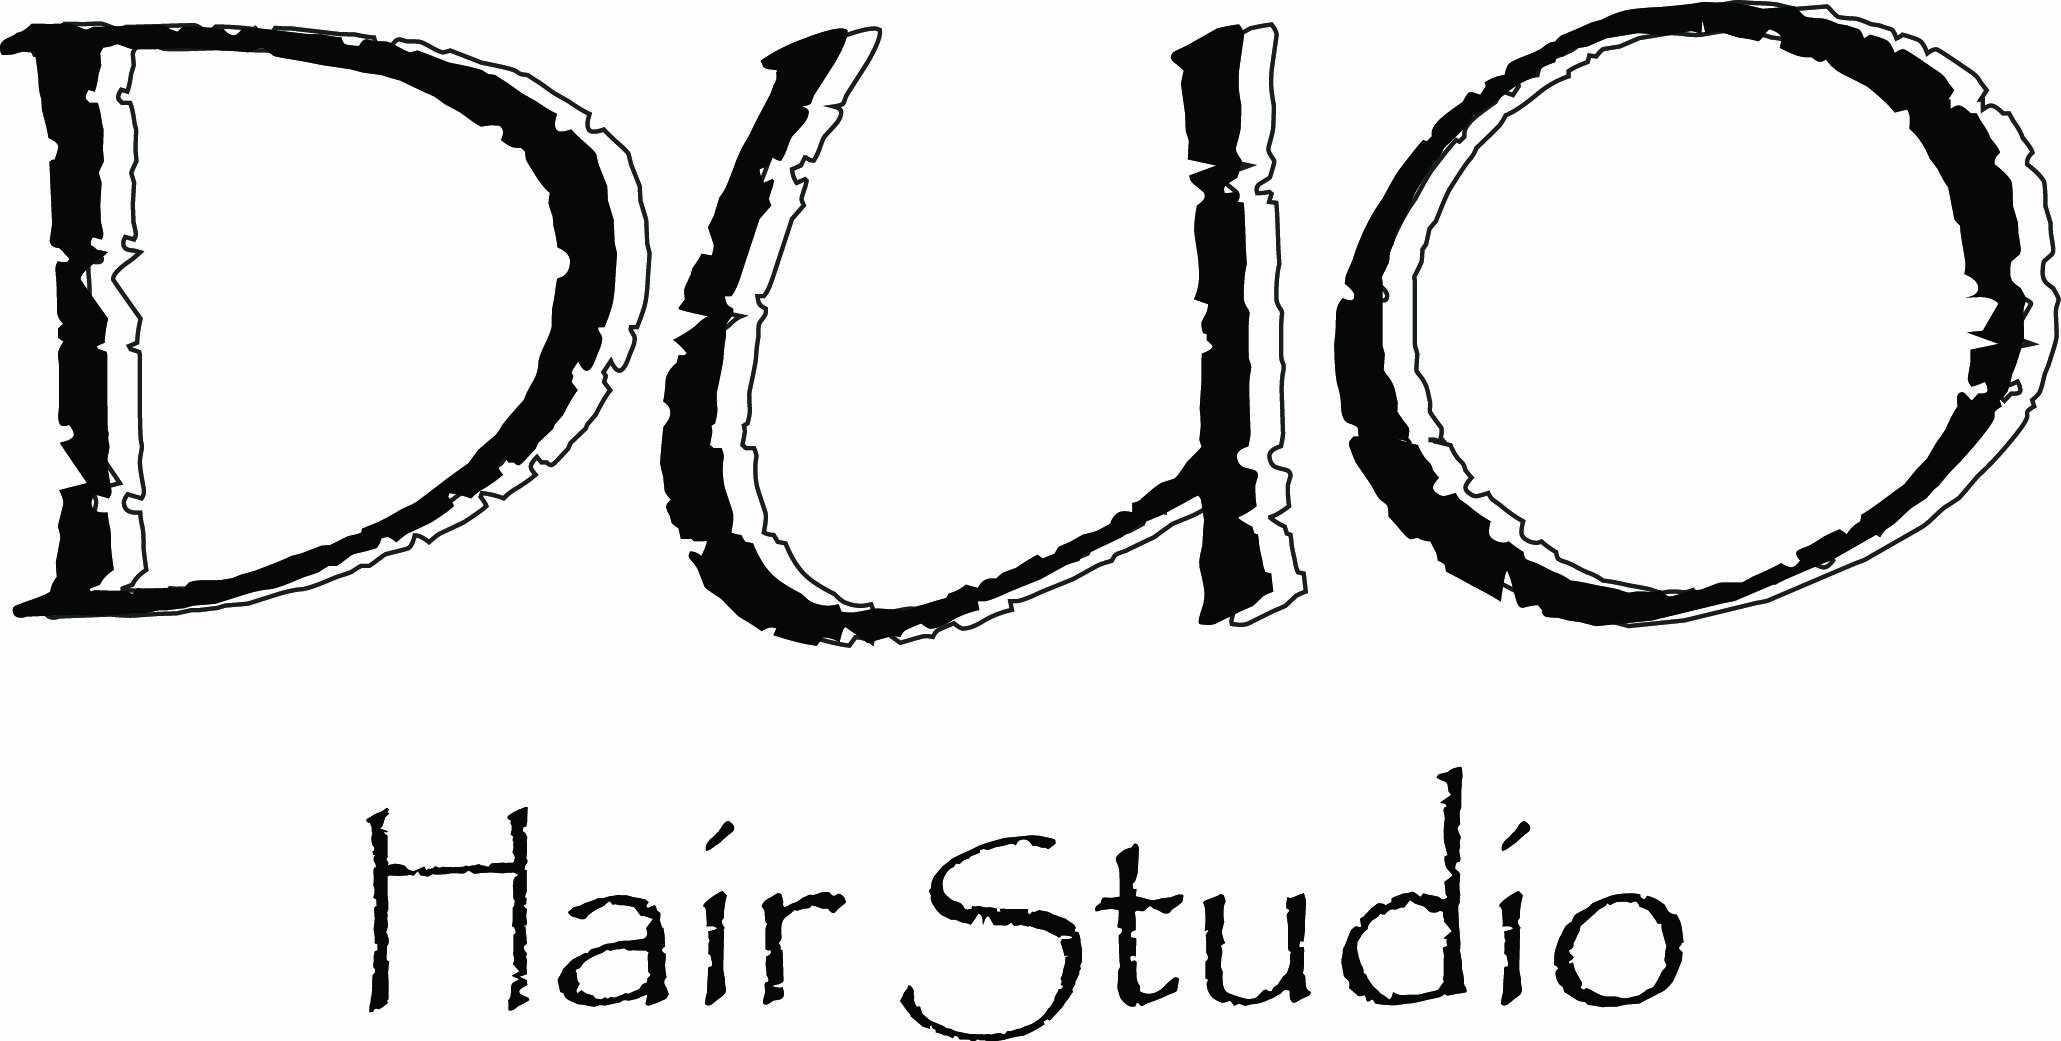 Duo Hair Studio